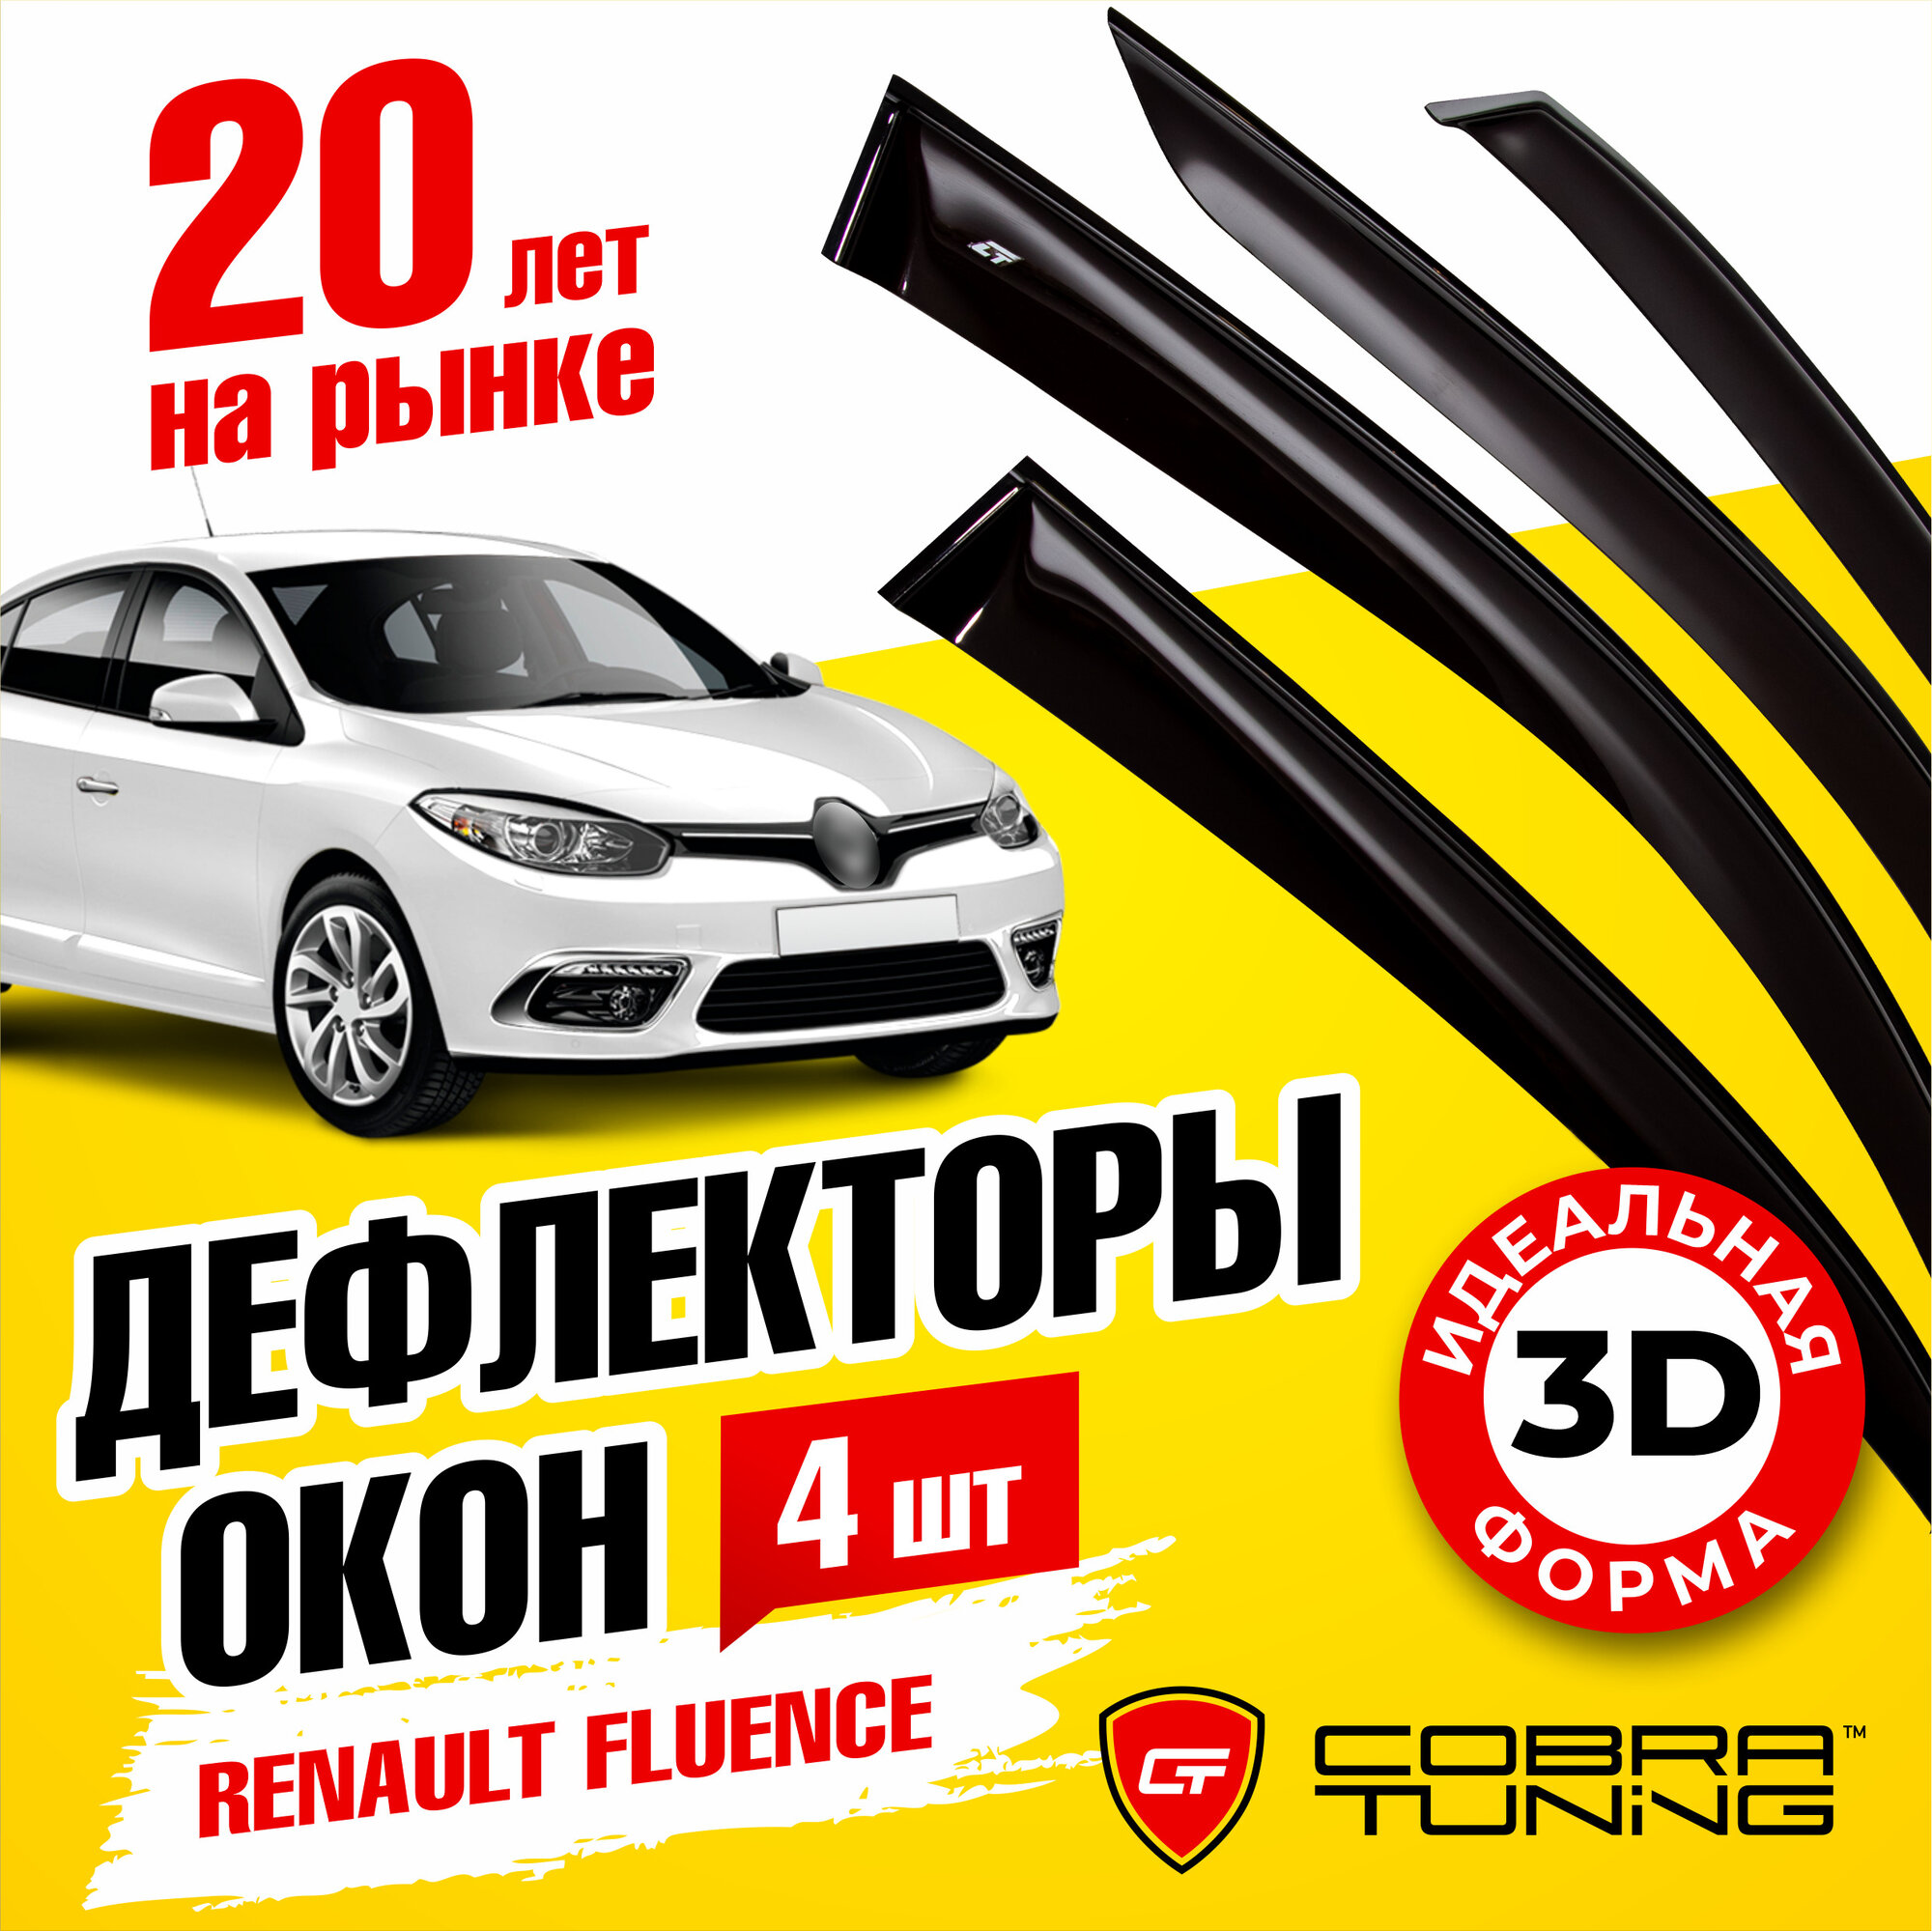 Дефлекторы боковых окон для Renault Fluence I (Рено Флюенс 1) 2009-2017, ветровики на двери автомобиля, Cobra Tuning